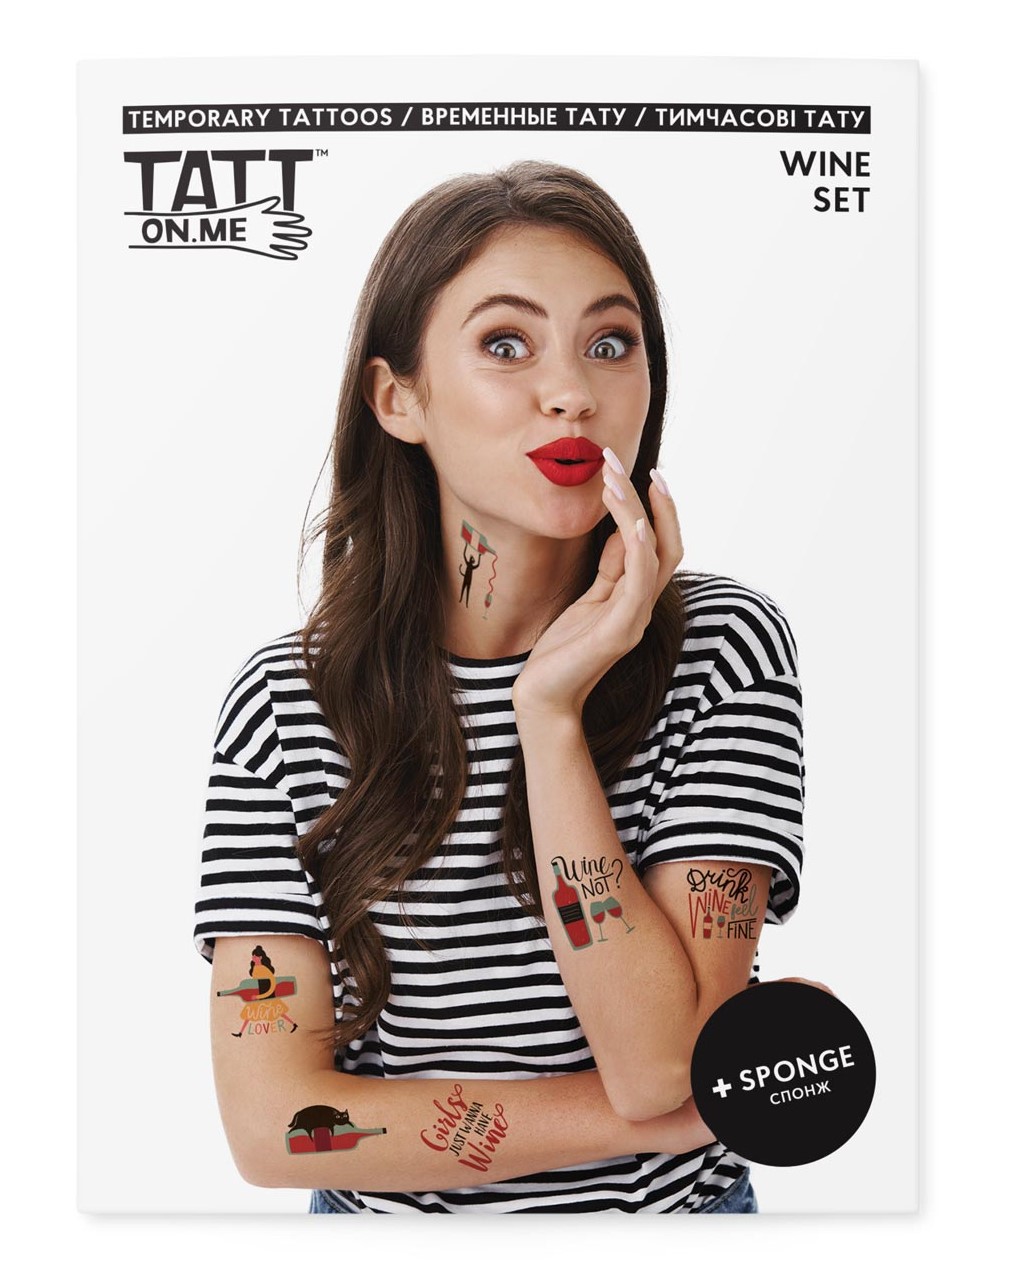 Tatuaje temporare - Wine Set | Tatton.me